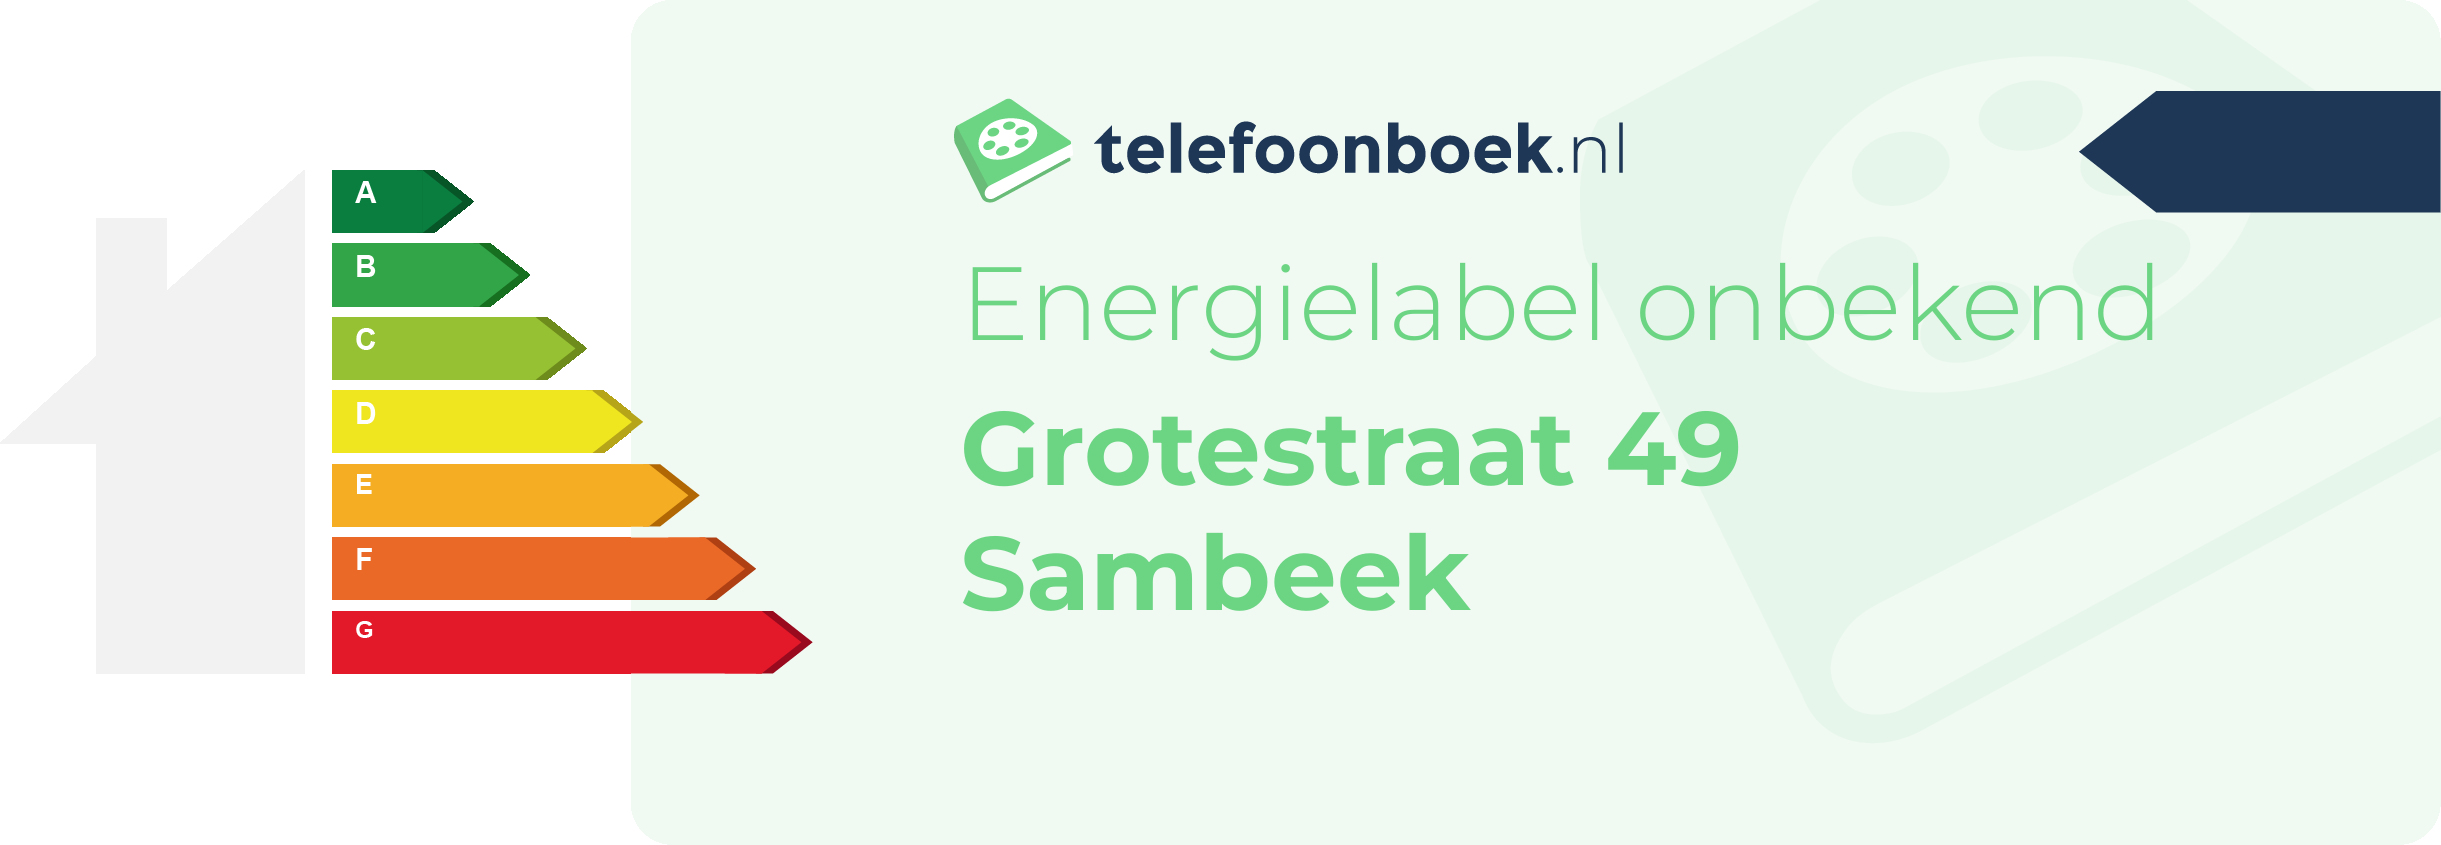 Energielabel Grotestraat 49 Sambeek